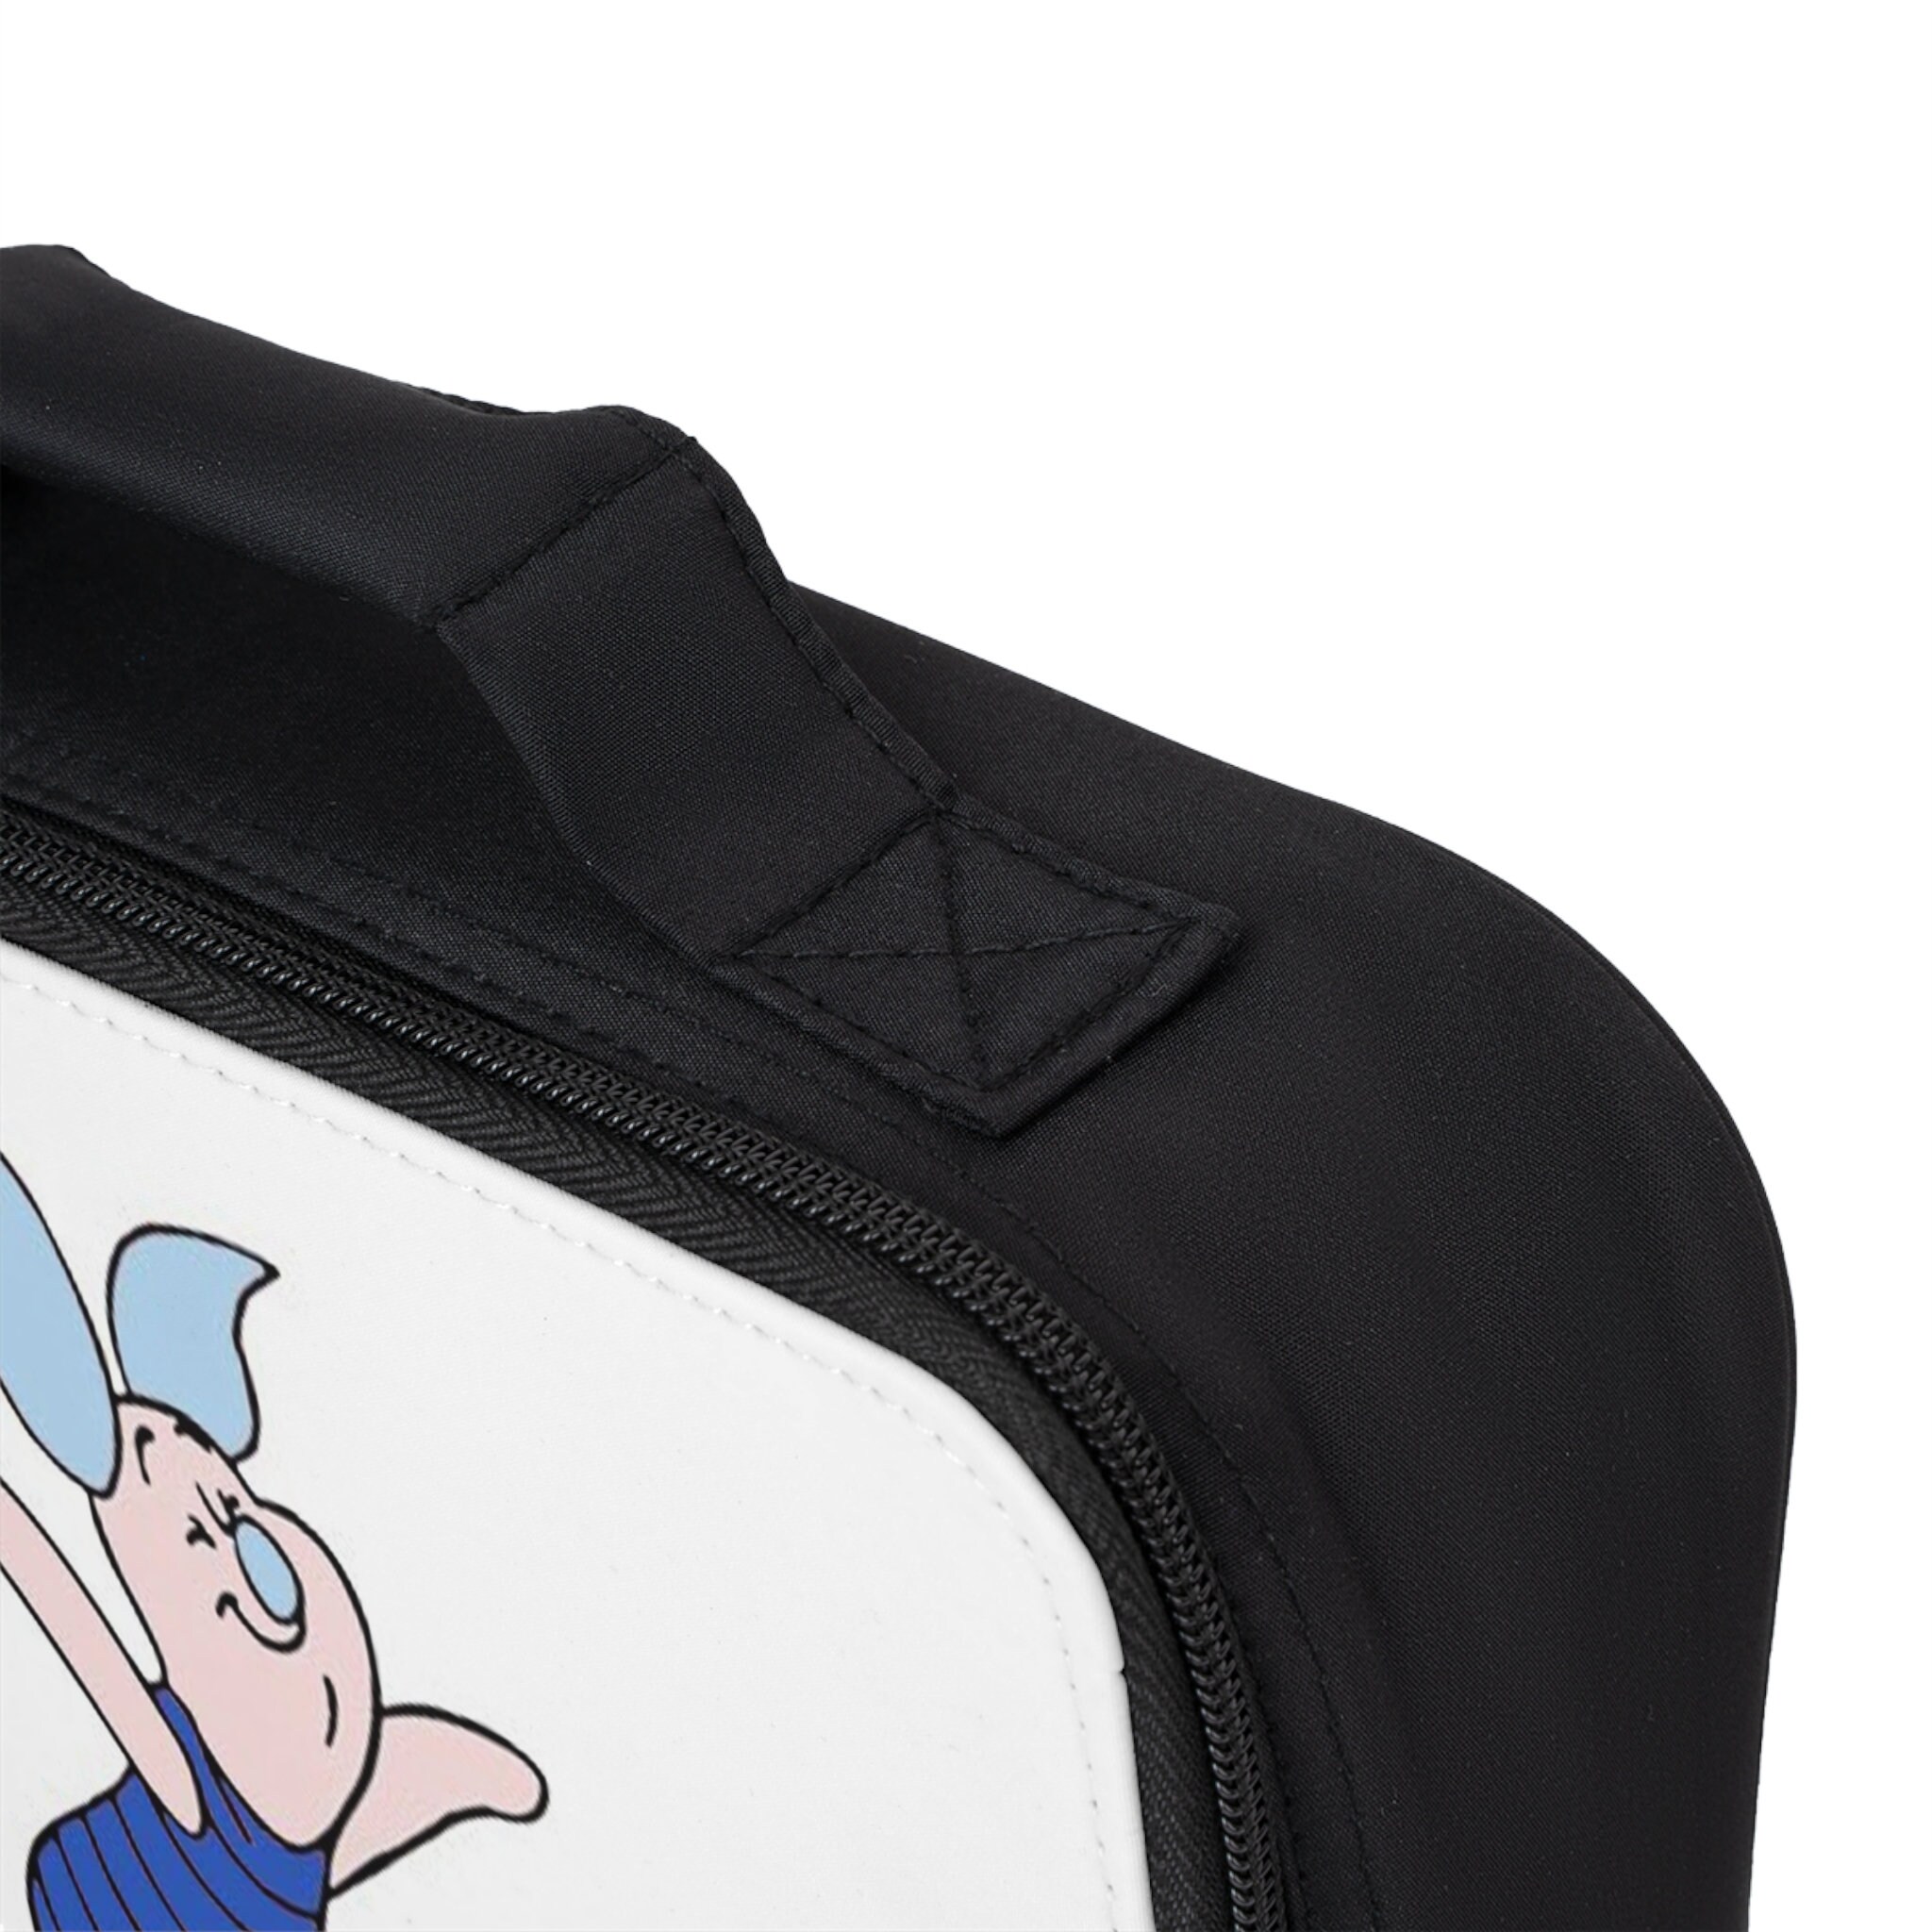 Disney Blue Piglet Lunch Bag